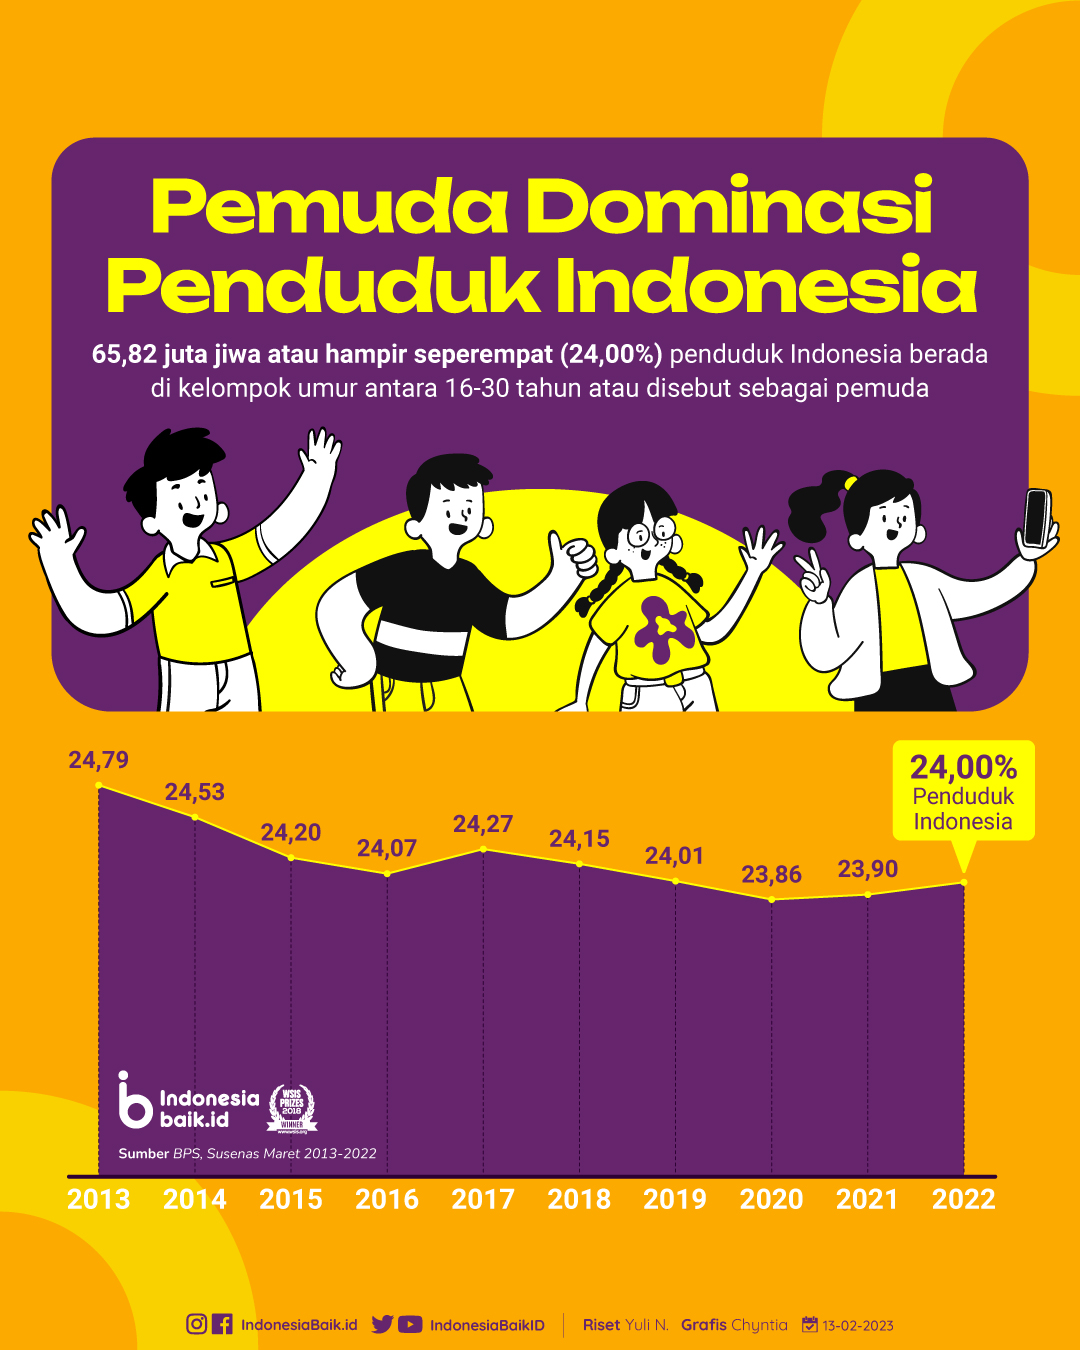 Penduduk Indonesia didominasi oleh pemuda